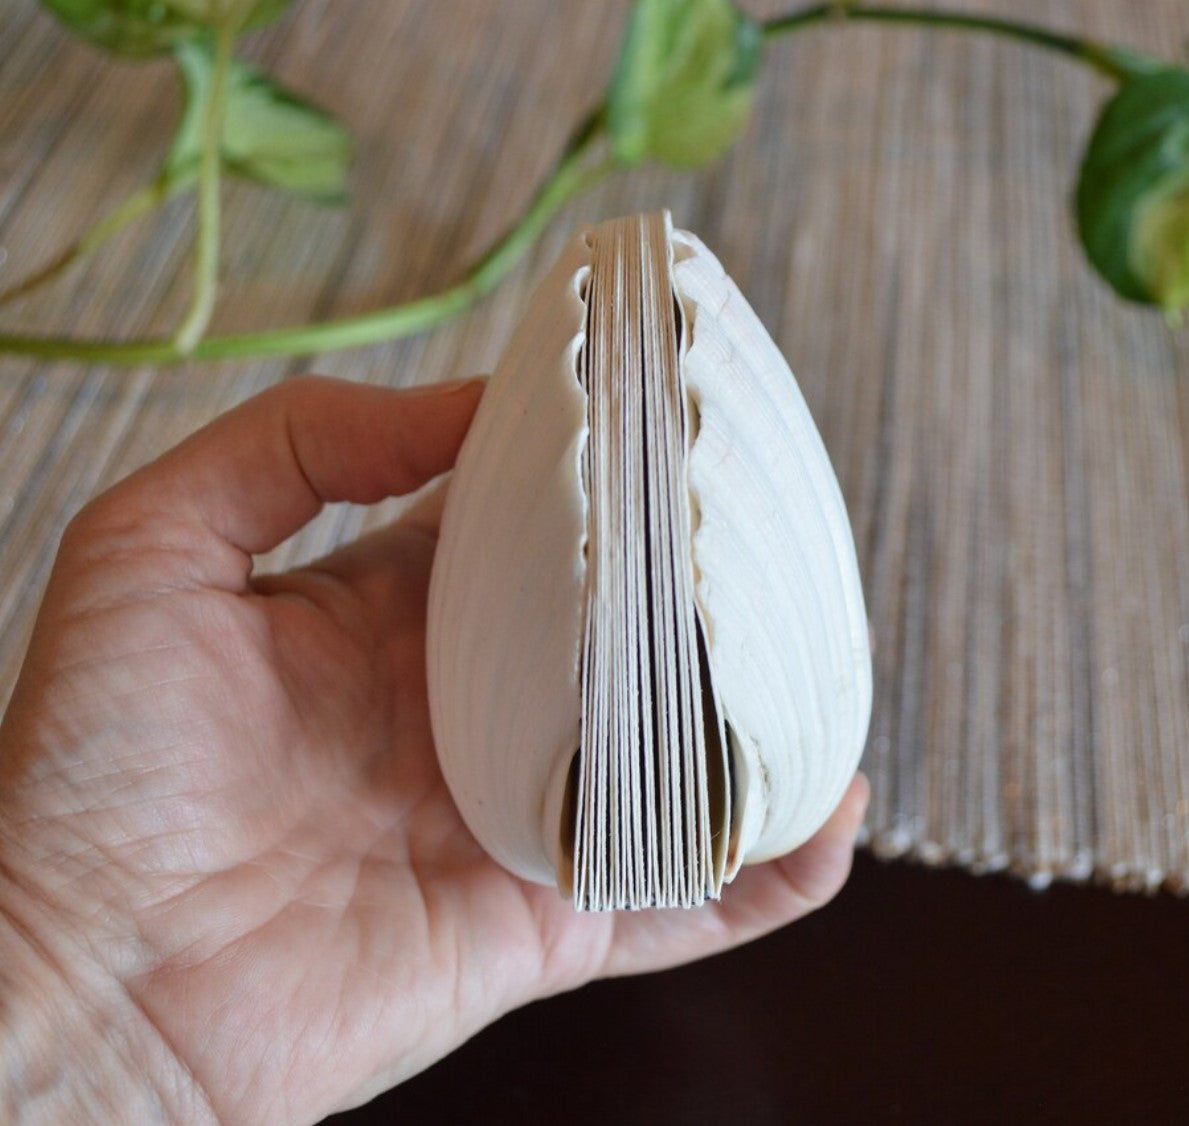 Genuine seashell scallop shell art journal / Blank book / watercolor paper sketchbook / handmade art books/ nature walk book / Pecten shell